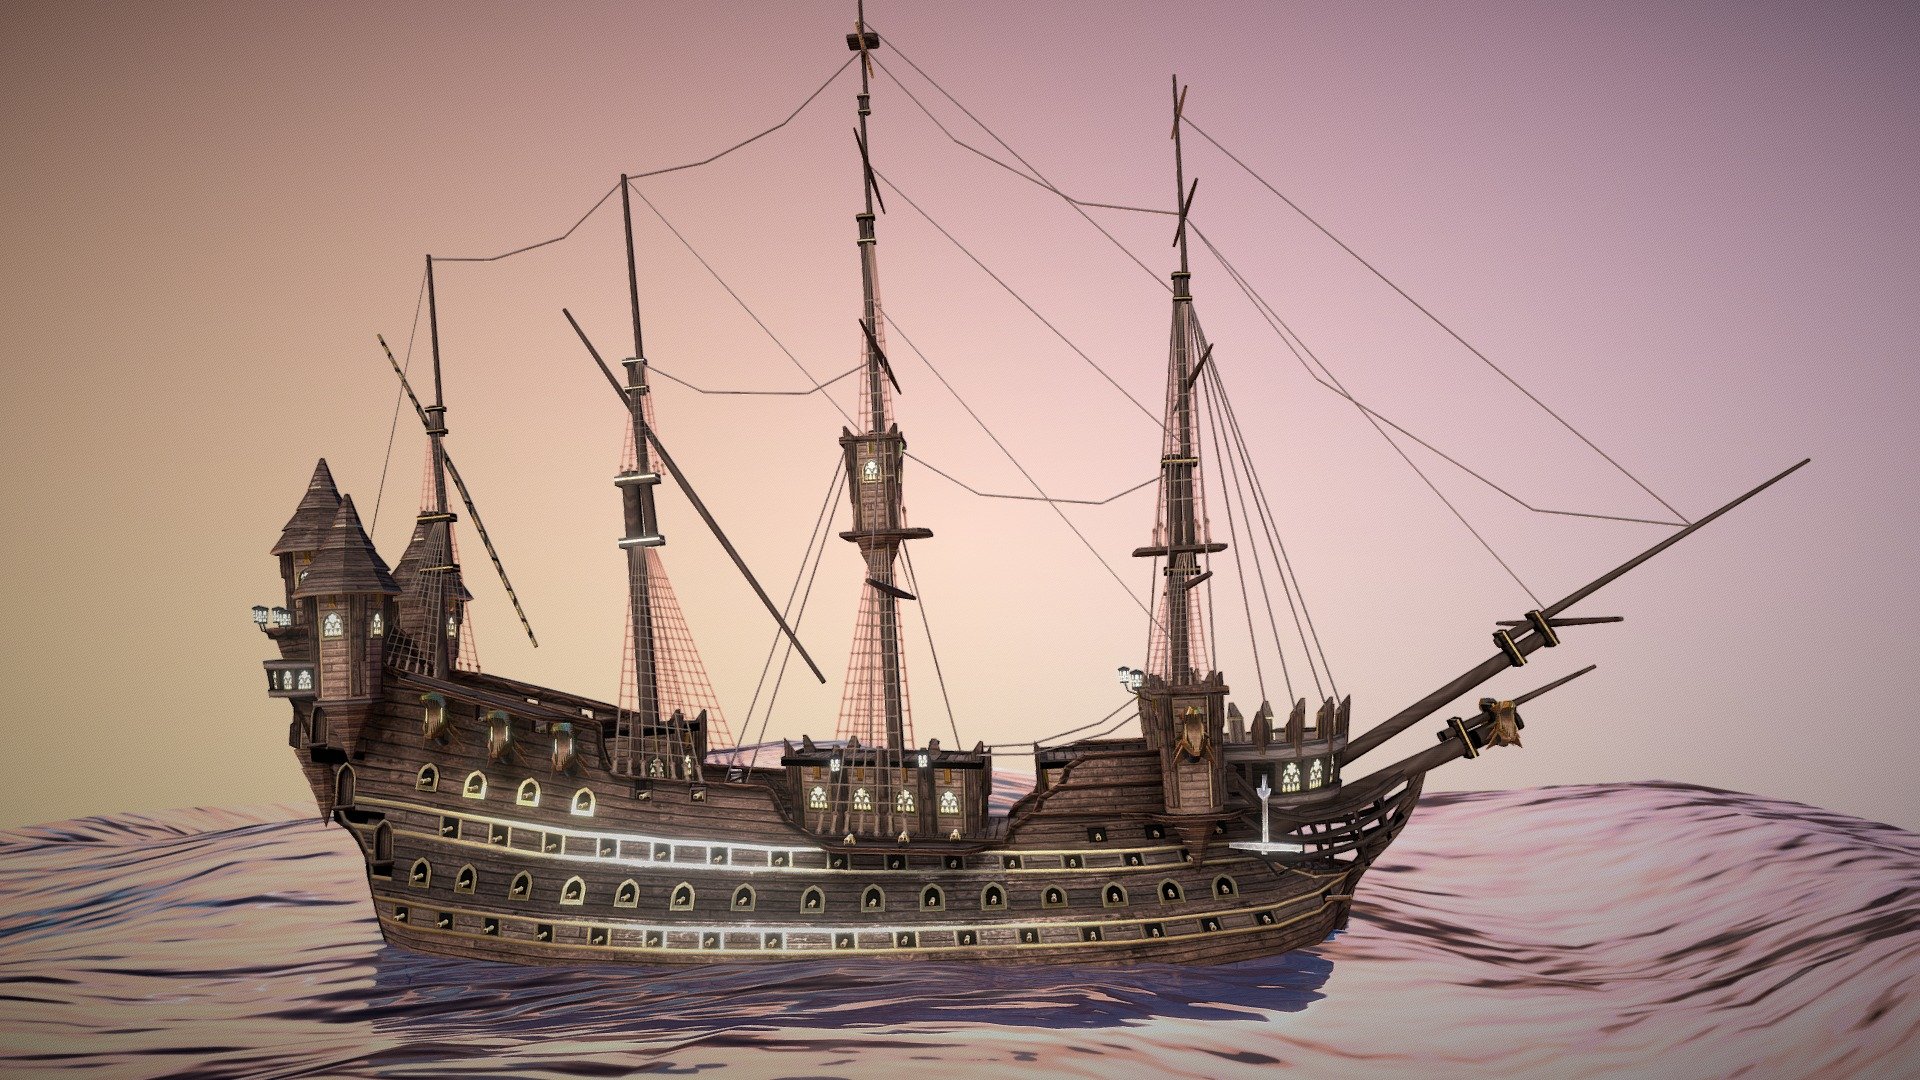 pirate-ship-3d-model-by-daniel-sturing-danielsturing-1e3c49c